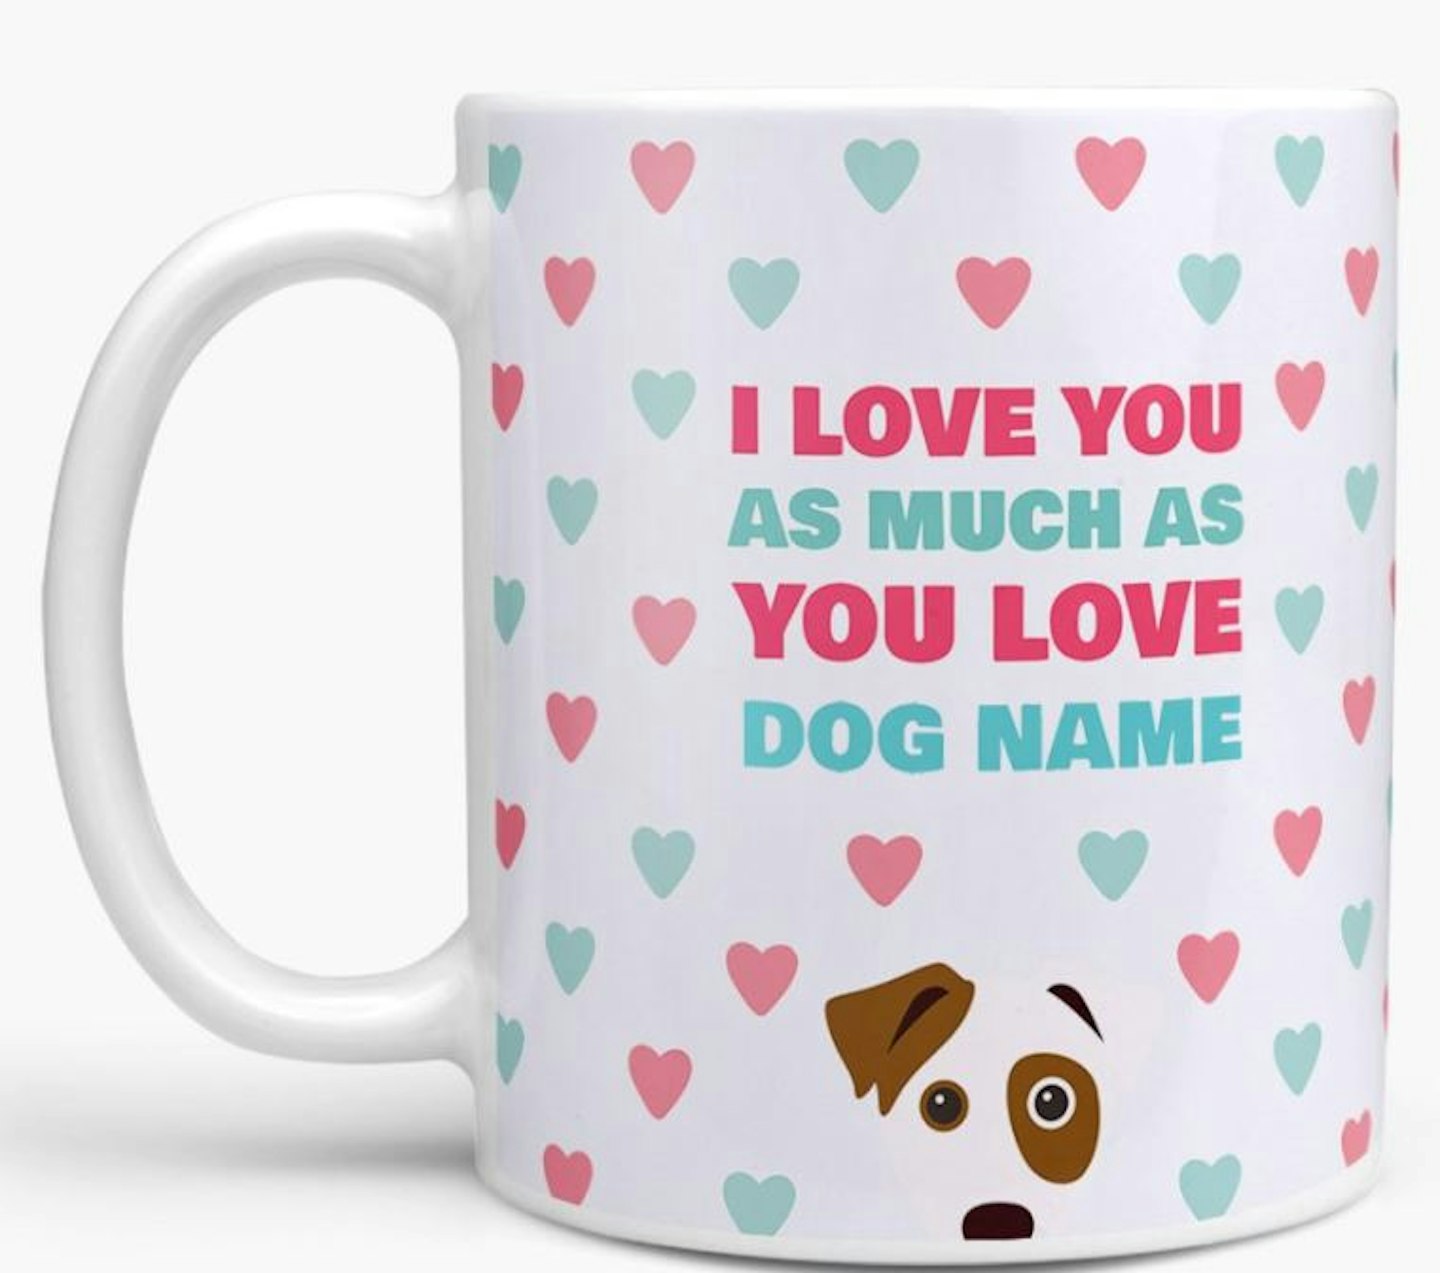 Personalised dog mug